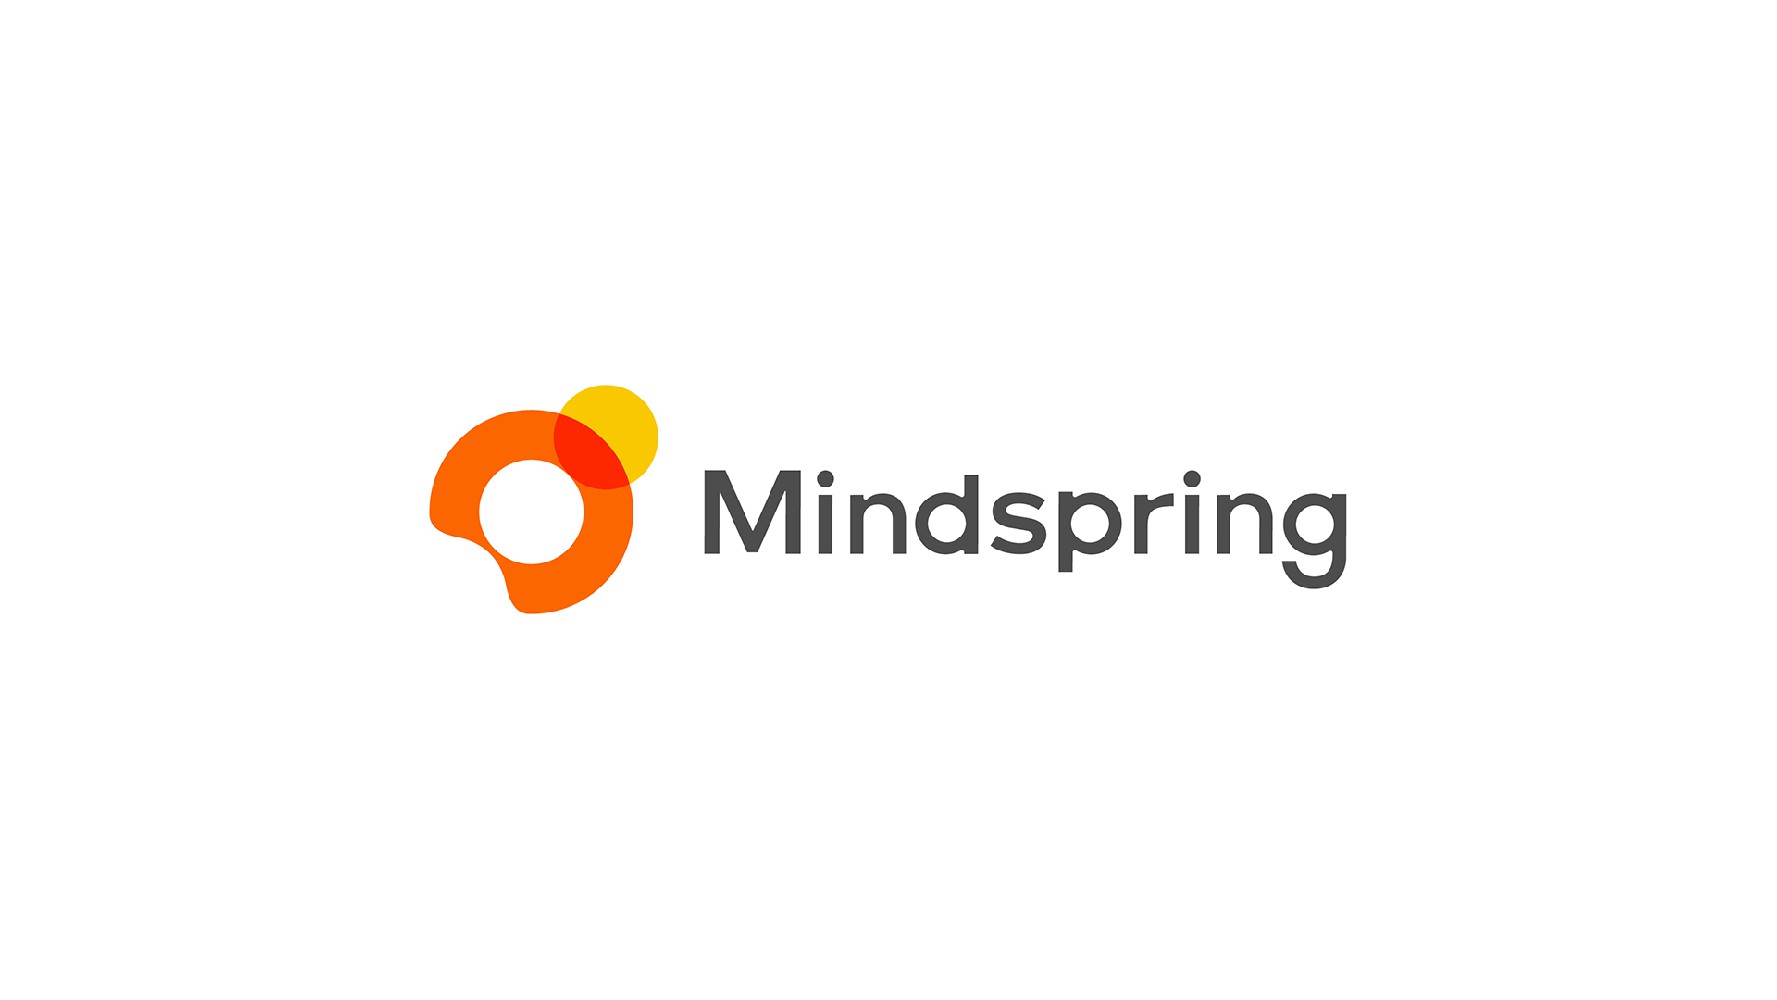 Mindspring